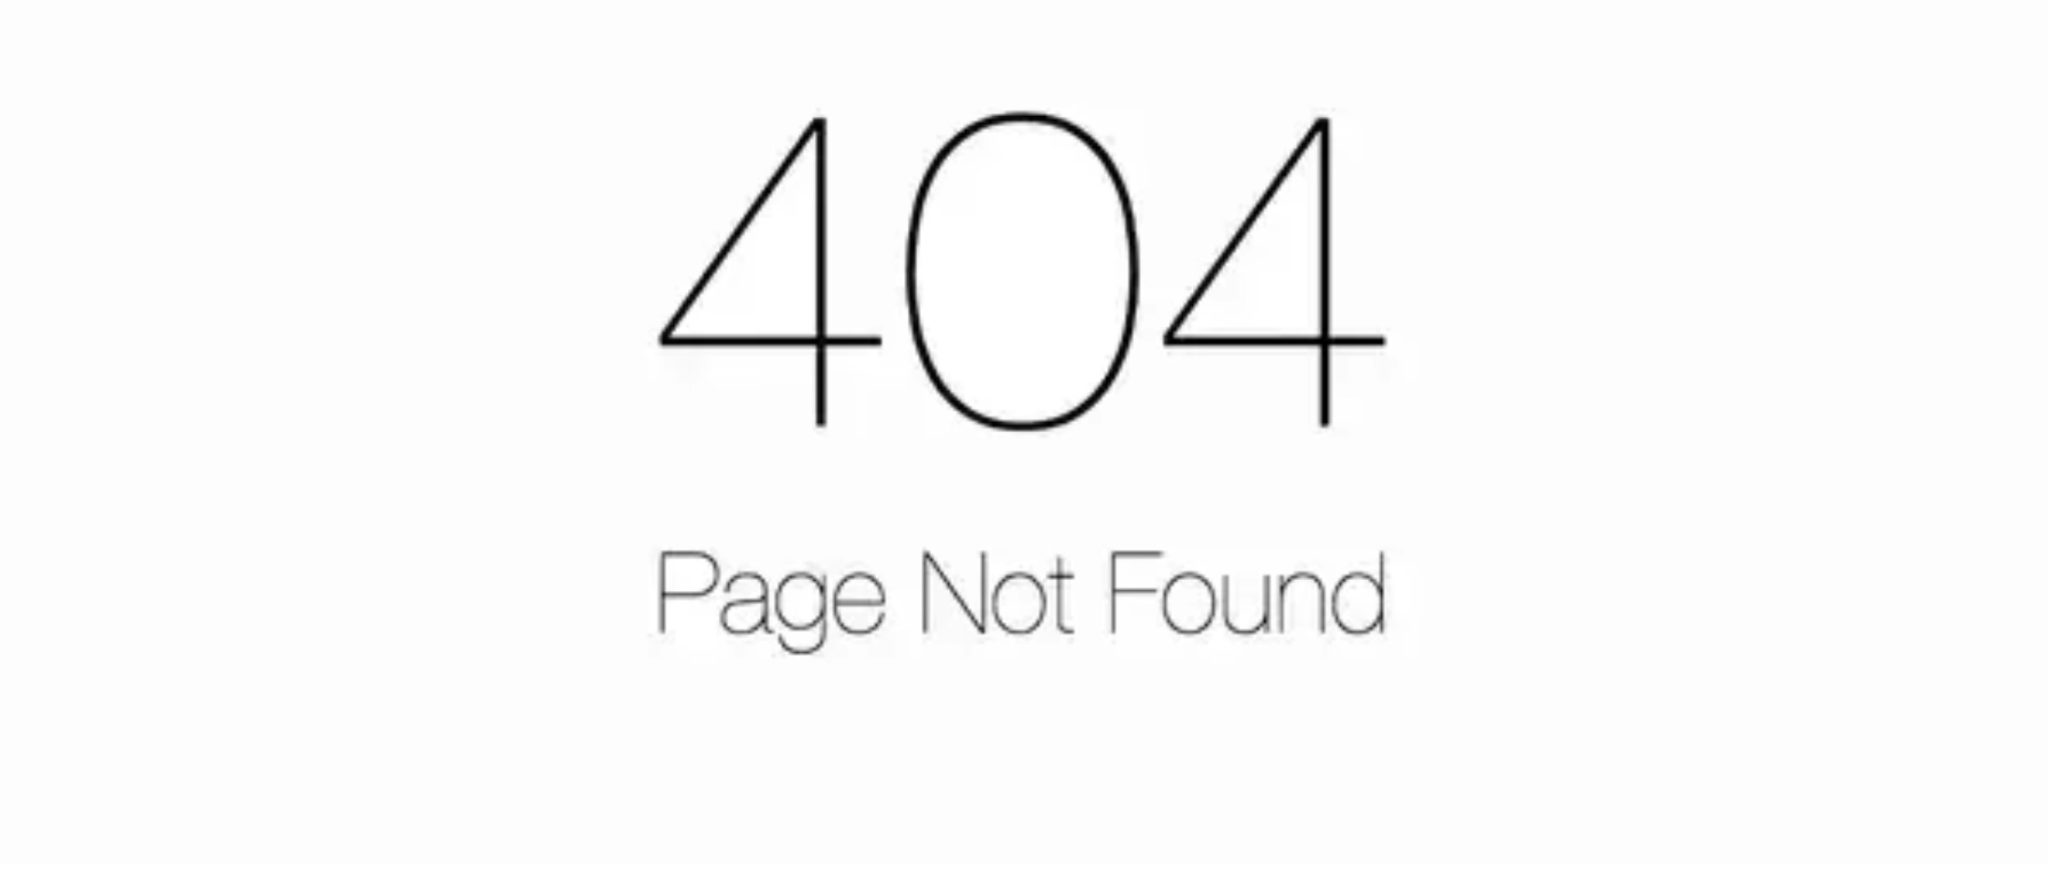 Apa Itu 404 Not Found Penyebab dan Solusinya